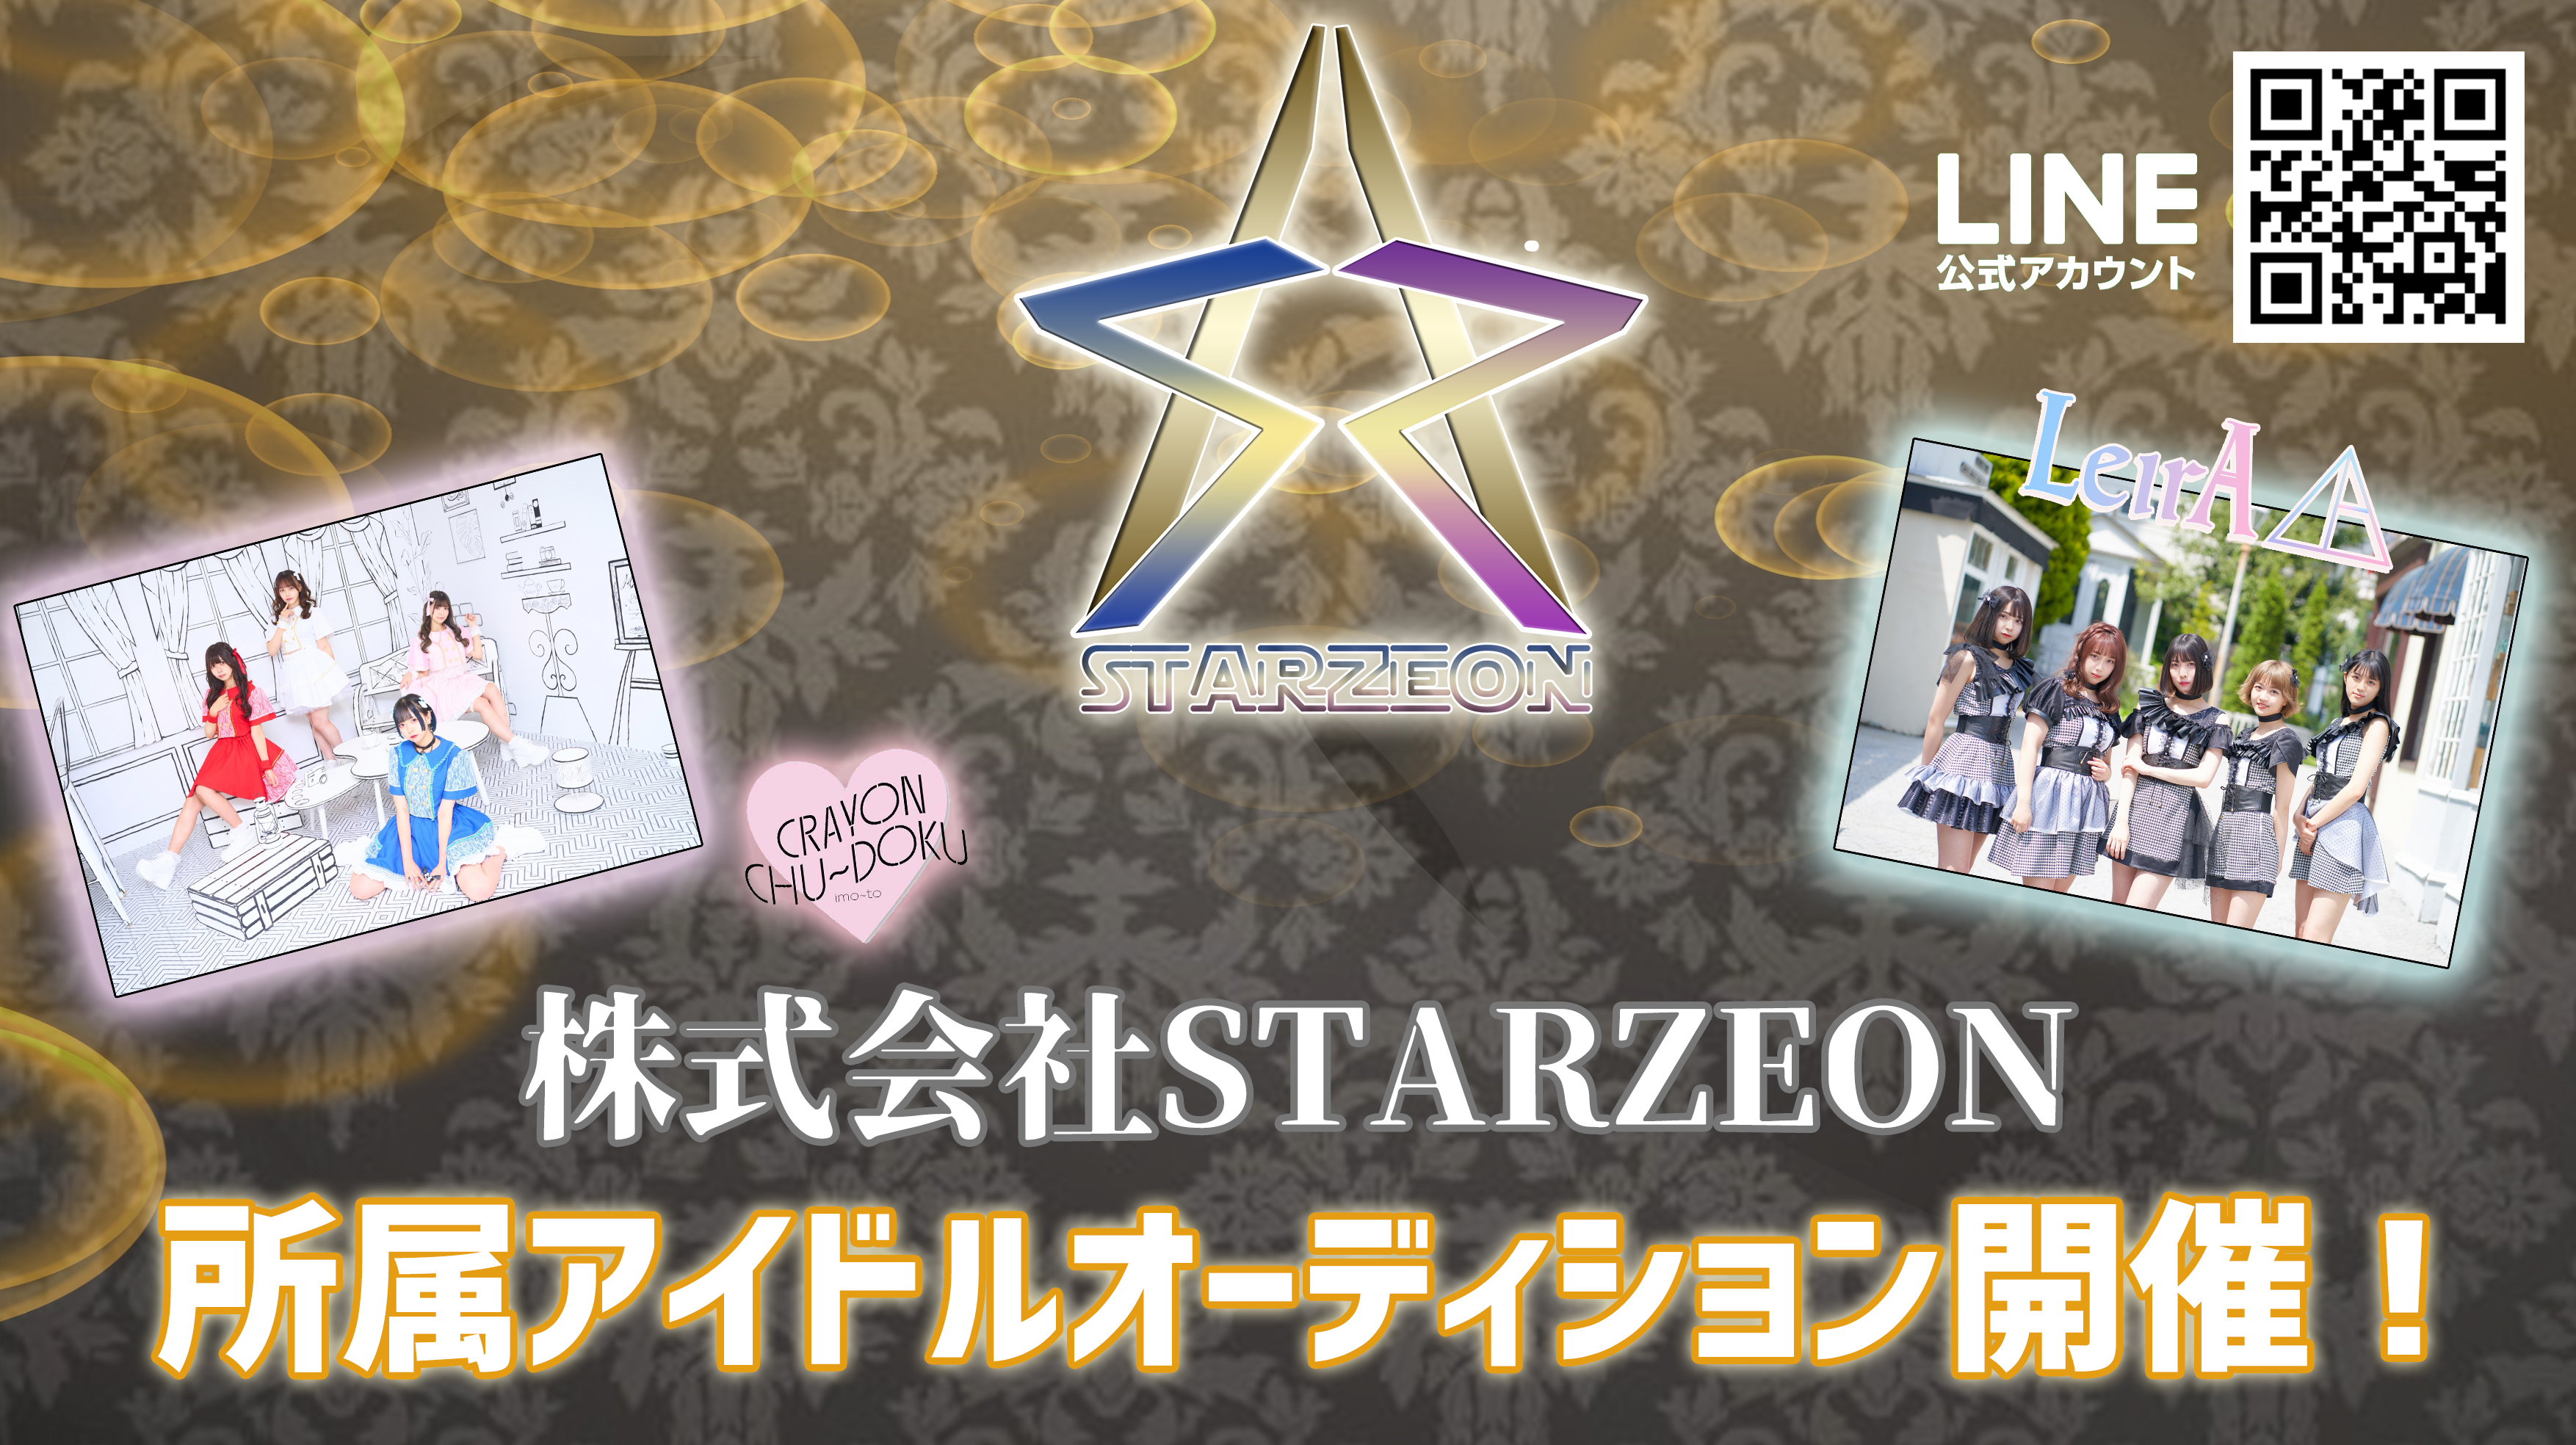 オーディション 株式会社STARZEON 新正統派アイドルグループ メンバー募集 超王道系のキラキラアイドルになれるチャンス 主催：株式会社STARZEON、カテゴリ：アイドル(正統派)